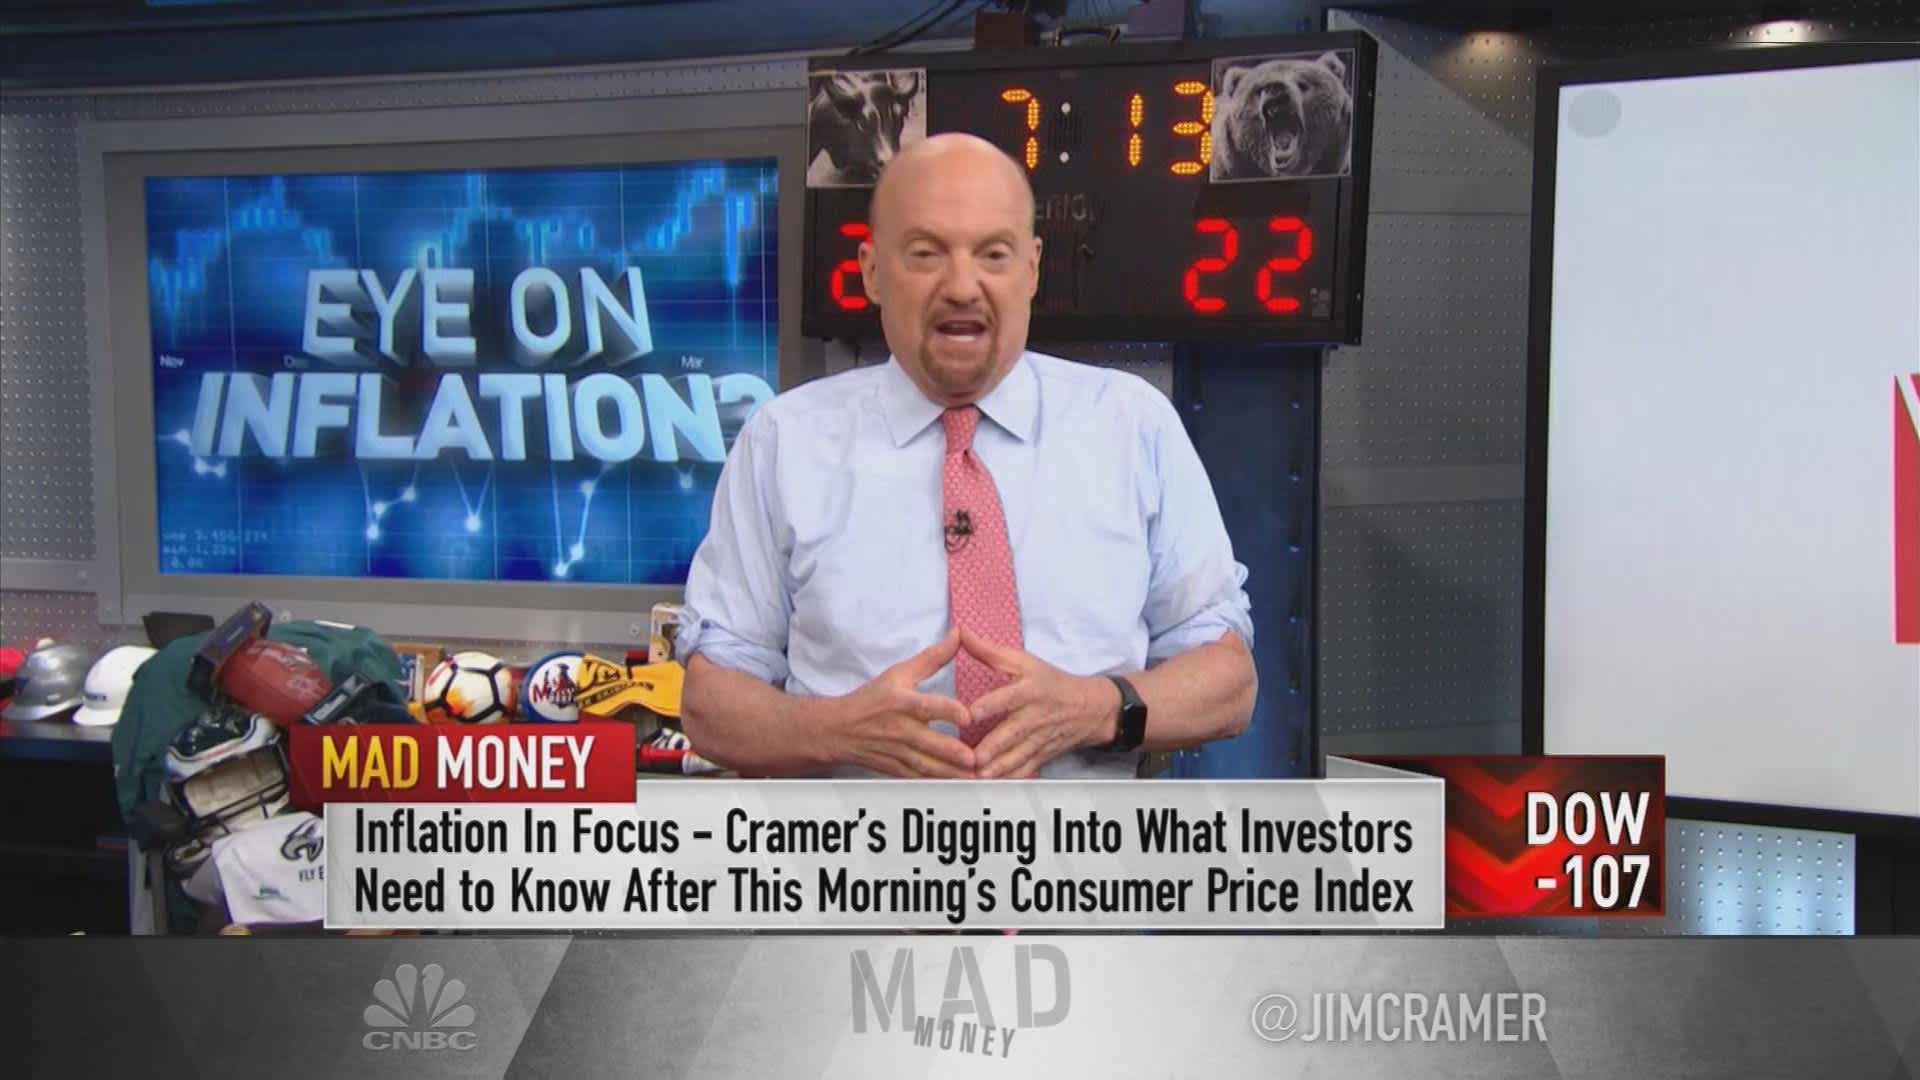 Jim Cramer: Cổ phiếu công nghệ trở nên hấp dẫn nhờ khả năng phòng ngừa lạm phát và Fed tăng lãi suất